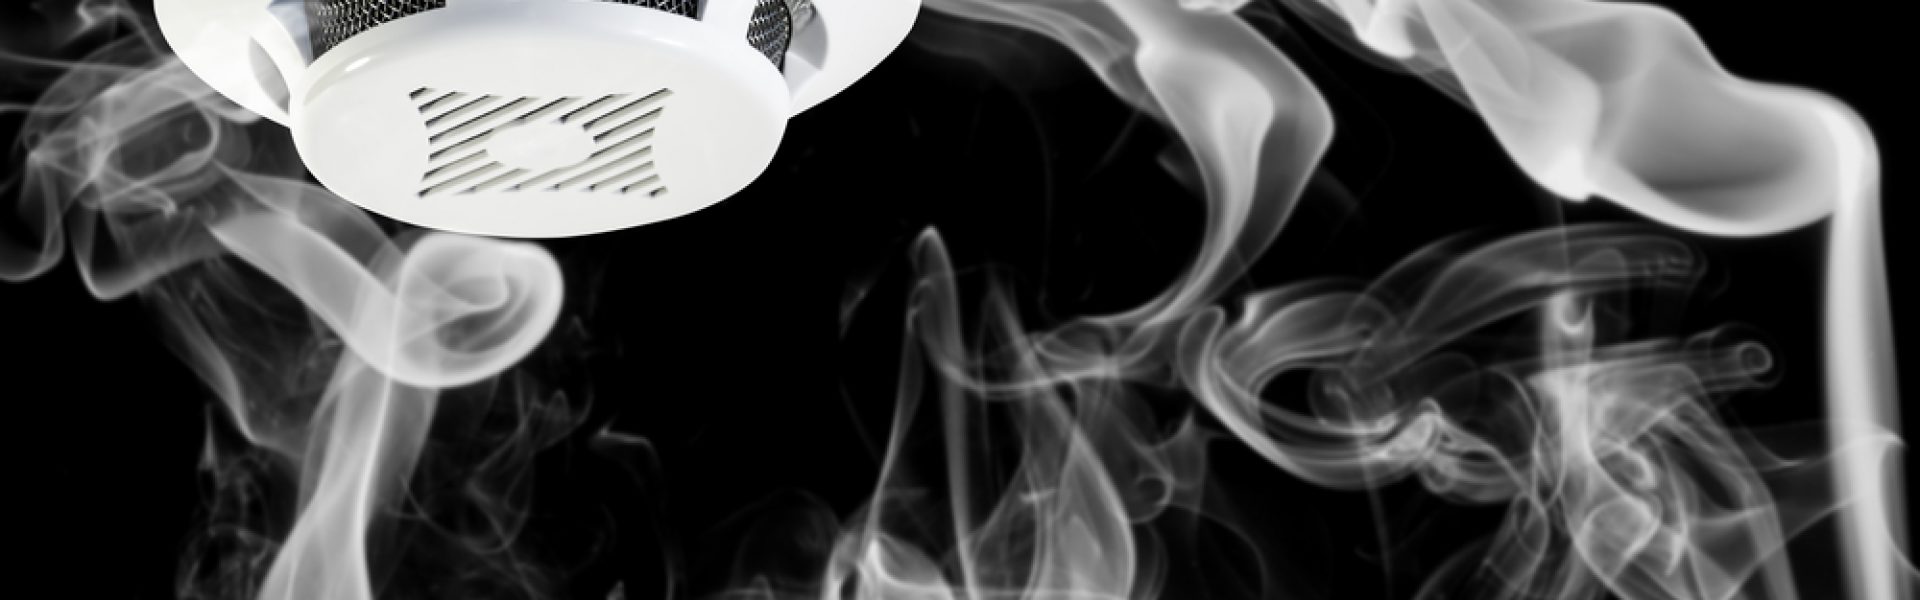 כל מה שאתם צריכים לדעת על התקנת גלאי עשן בבית או בעסק